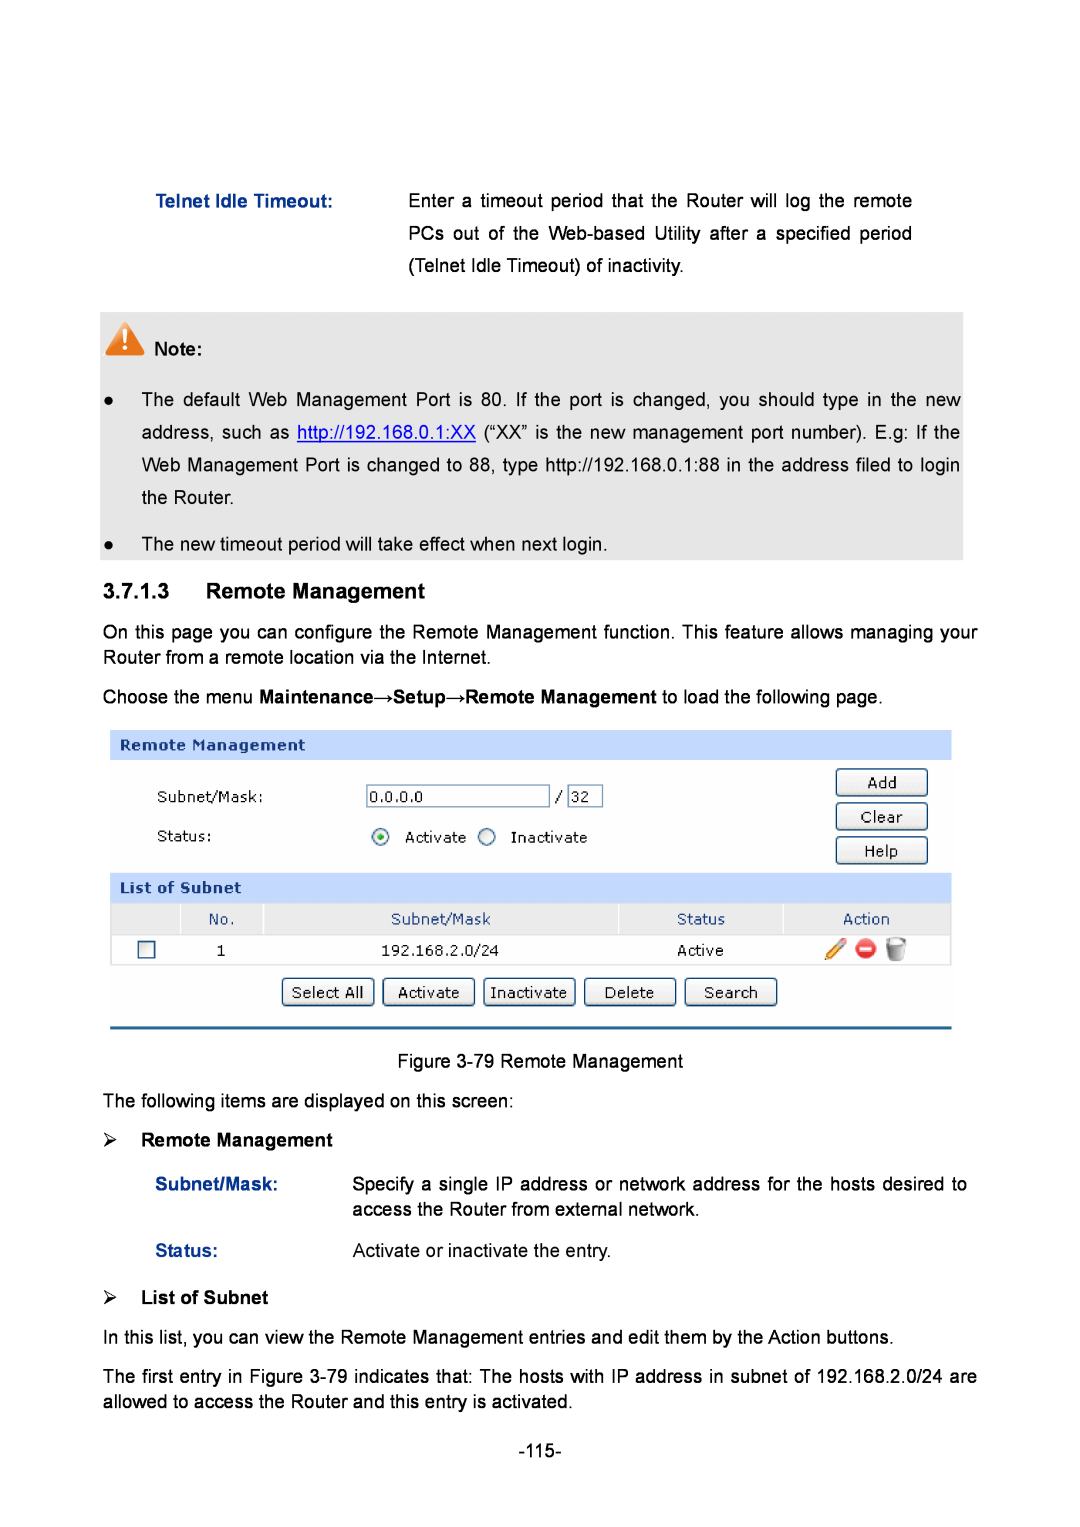 TP-Link TL-ER6020 manual  Remote Management,  List of Subnet 